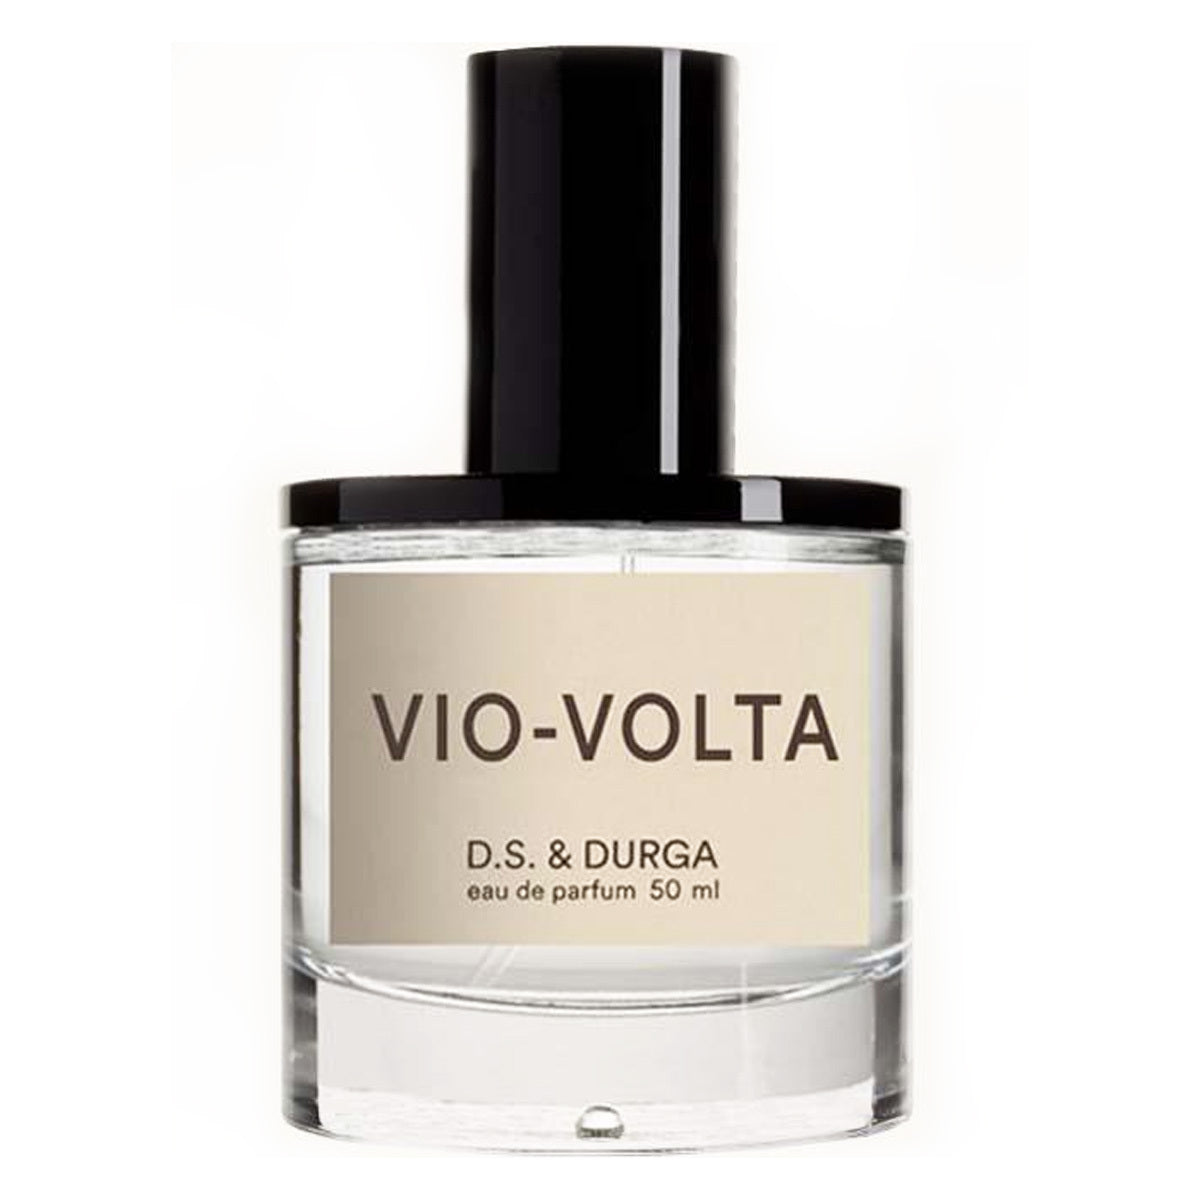 Primary image of Vio-Volta Eau de Parfum